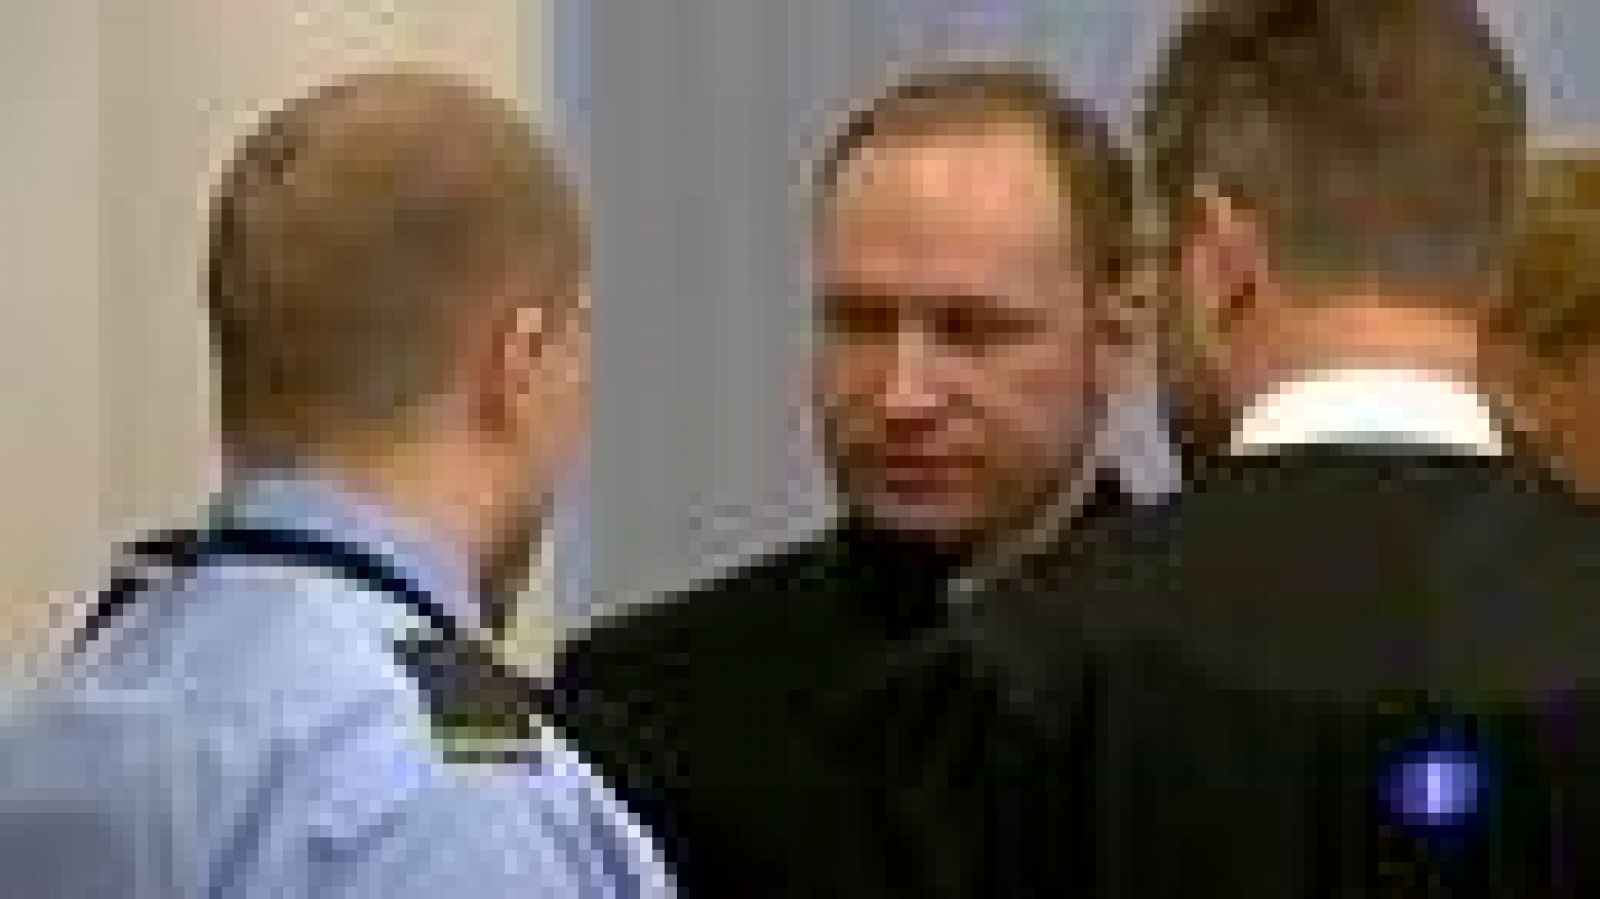 Cuarto día de juicio contra Anders Breivik